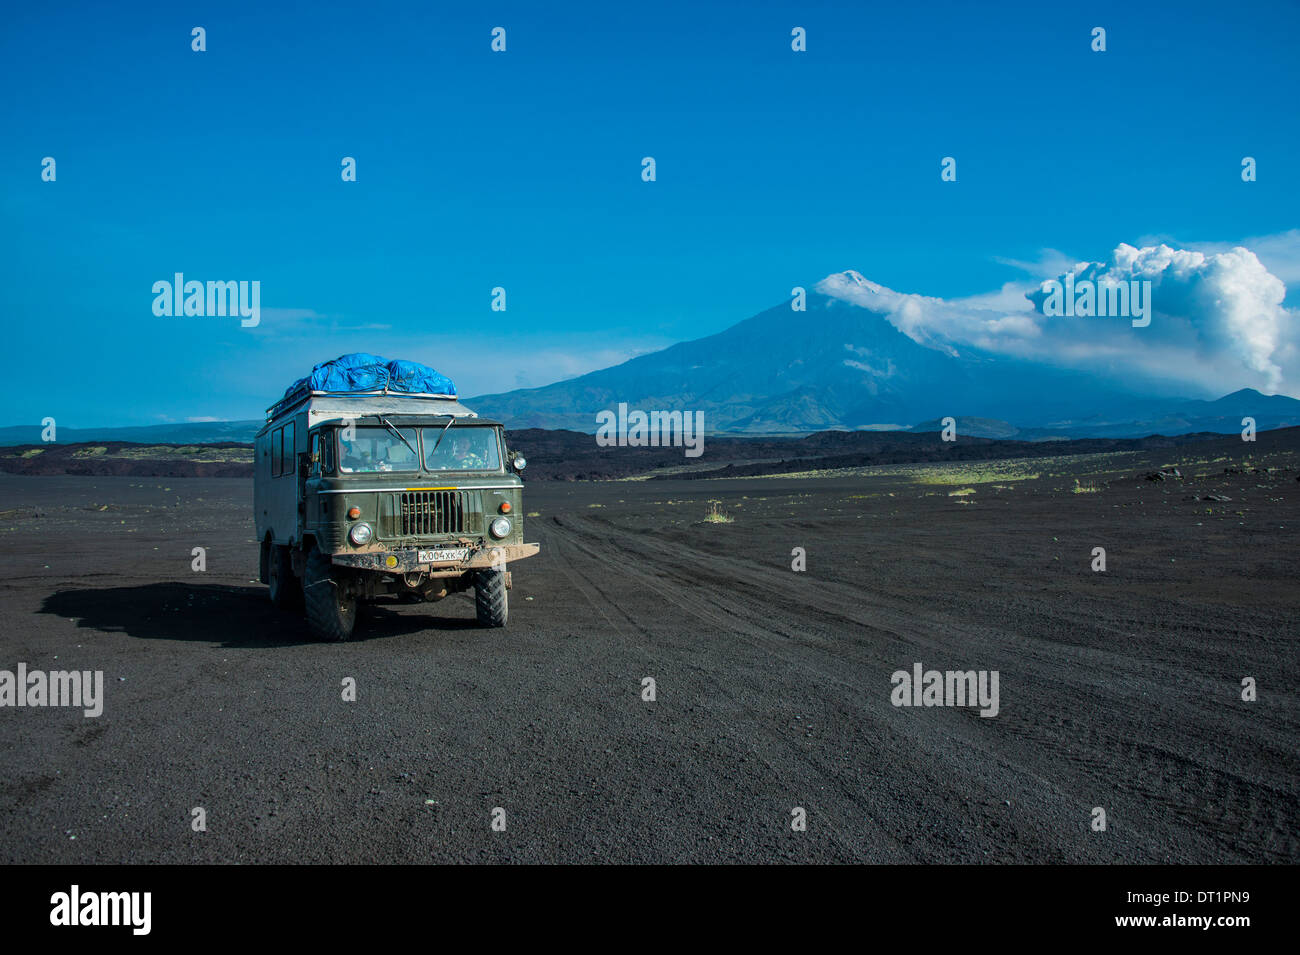 Camion russe s'arrête à un point de vue sur le champ de lave du volcan Tolbachik, du Kamtchatka, la Russie, l'Eurasie Banque D'Images